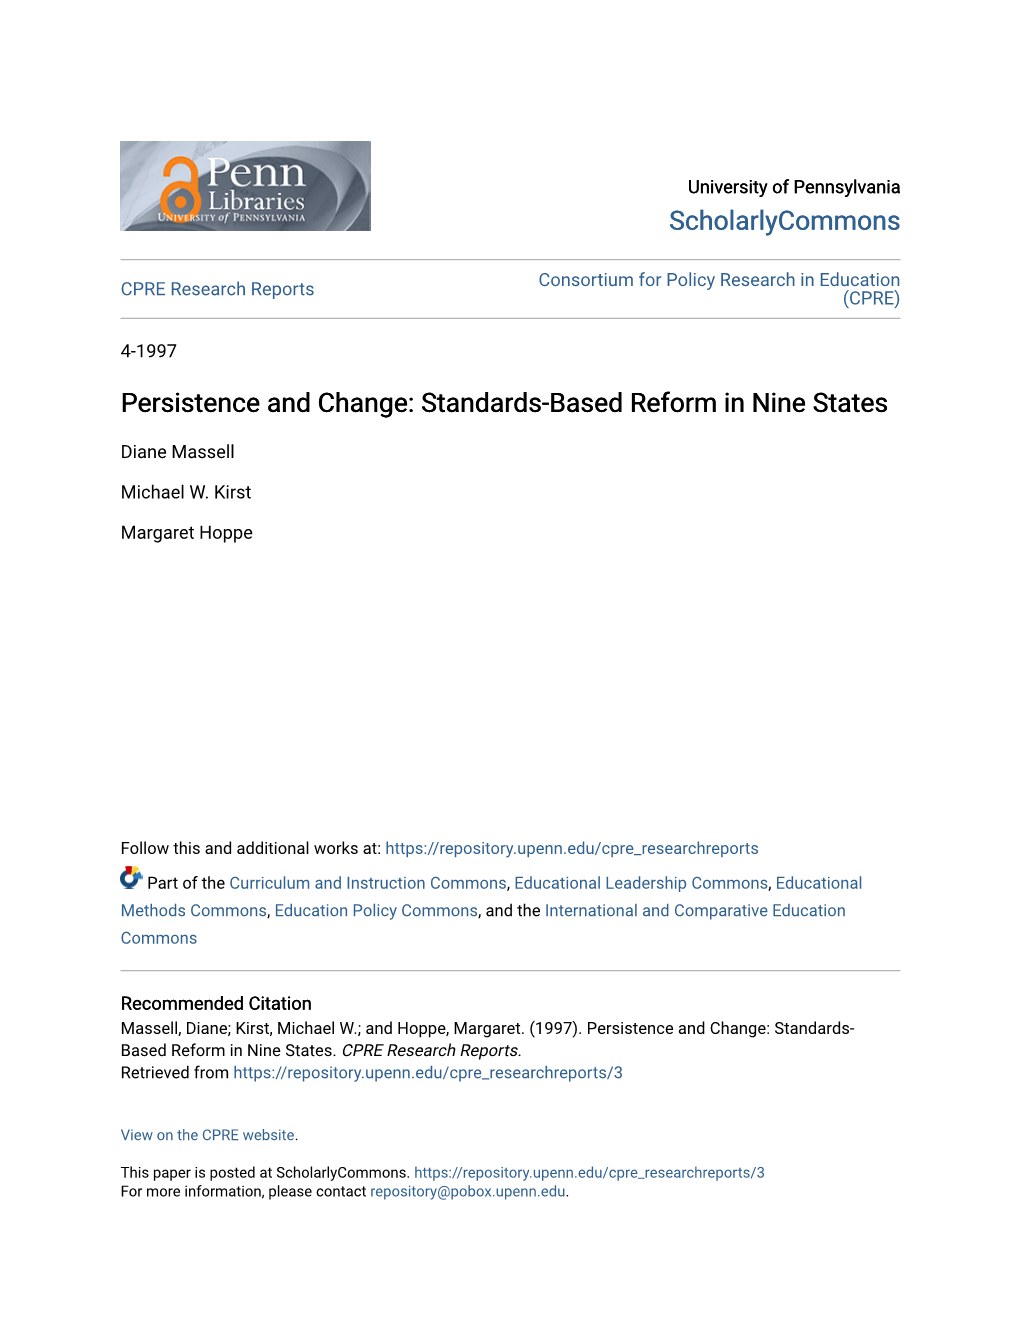 Standards-Based Reform in Nine States